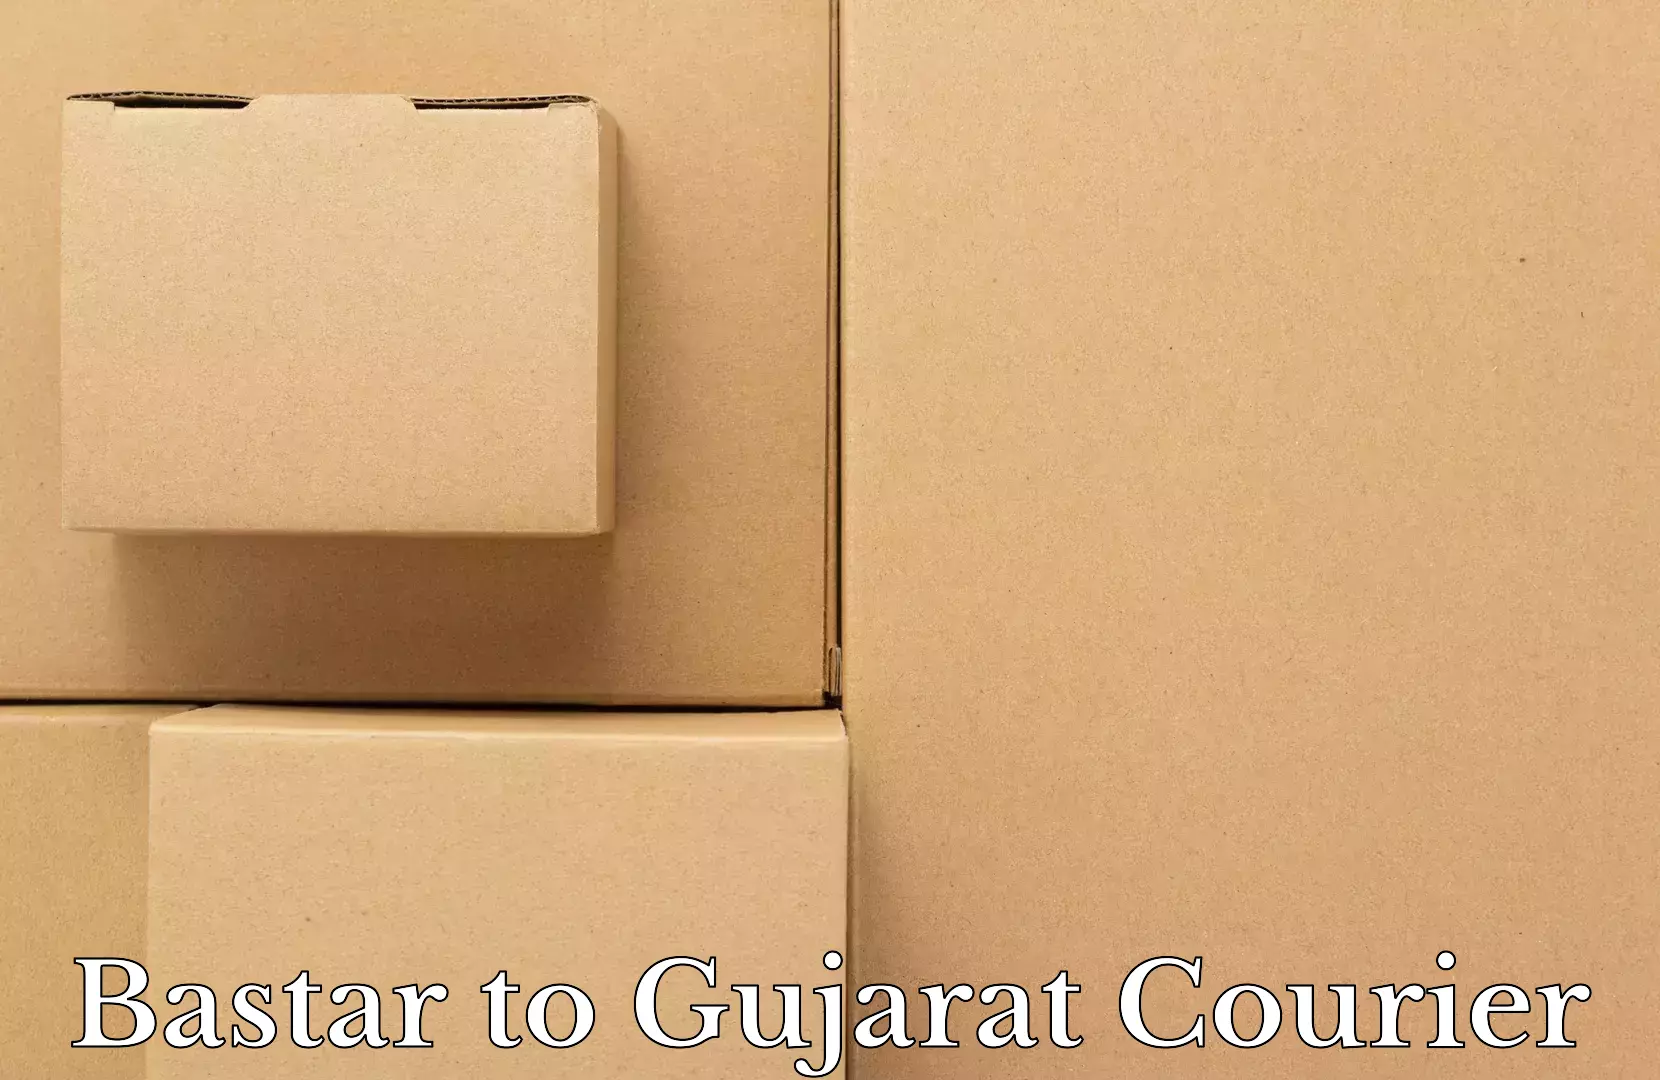 Luggage delivery estimate Bastar to Gujarat